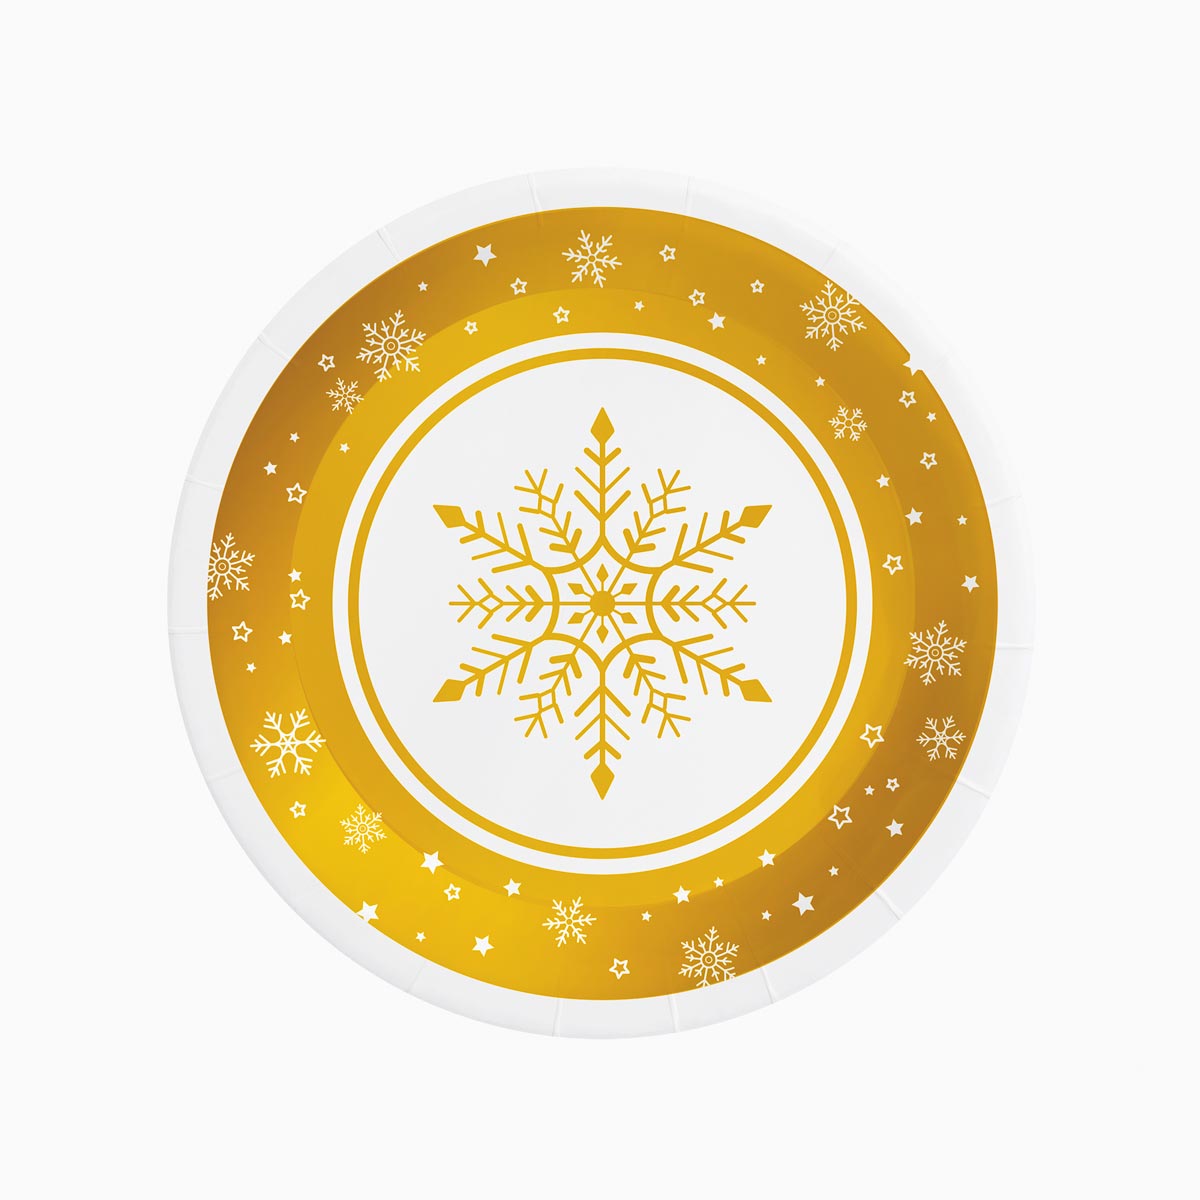 Piatto di cartone di Natale Ø 23 cm Cpo Snow Gold